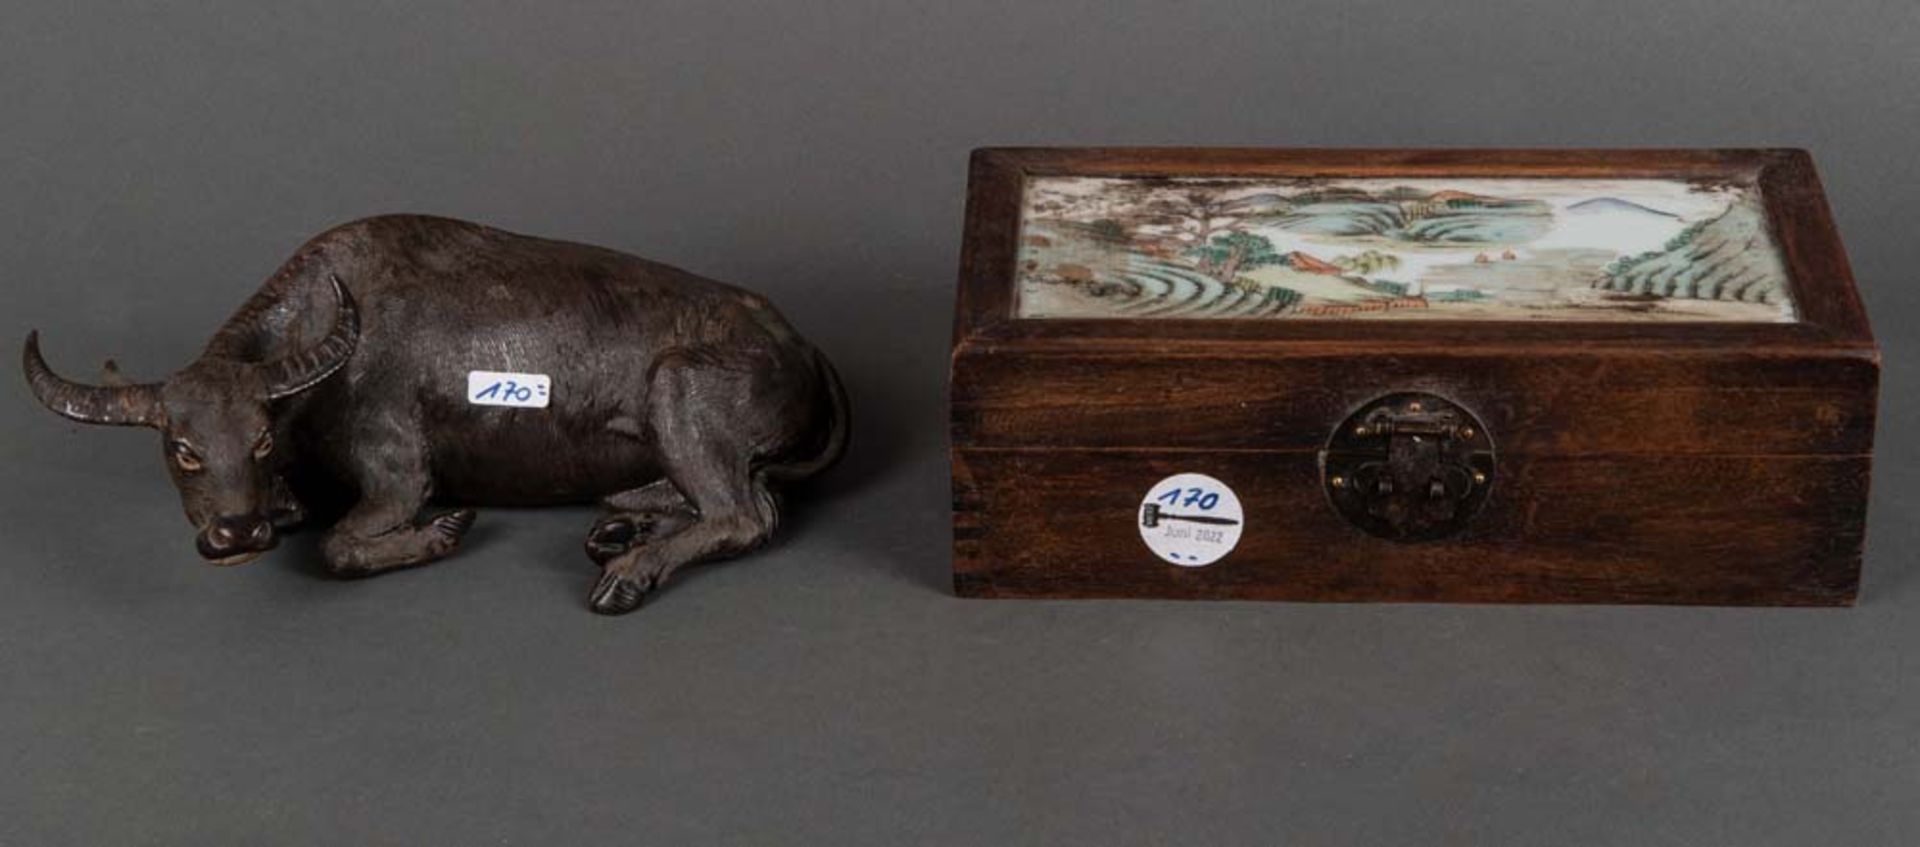 Liegender Wasserbüffel. Asien 20. Jh. Keramik, H=8 cm. Dazu Holzbox mit Glasdeckel, bunt bemalt, H=9